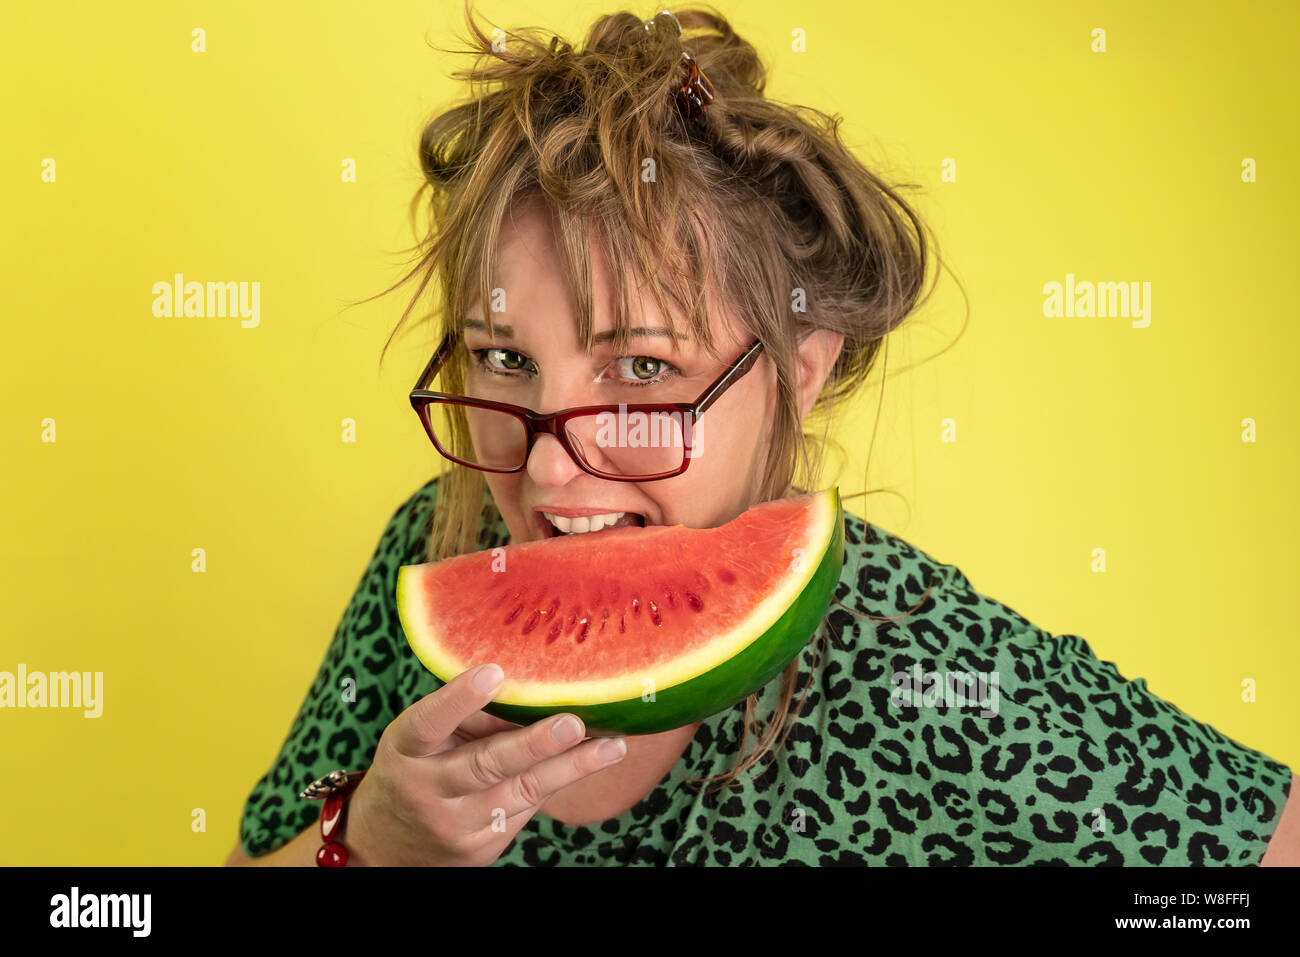 Ein Jahr 40 alte lustige Frau beißt in ein Stück Wassermelone. Sie hat wilde dunkelblonde Haare und trägt eine Brille. Gelber Hintergrund und Tier reminis Drucken Stockfoto